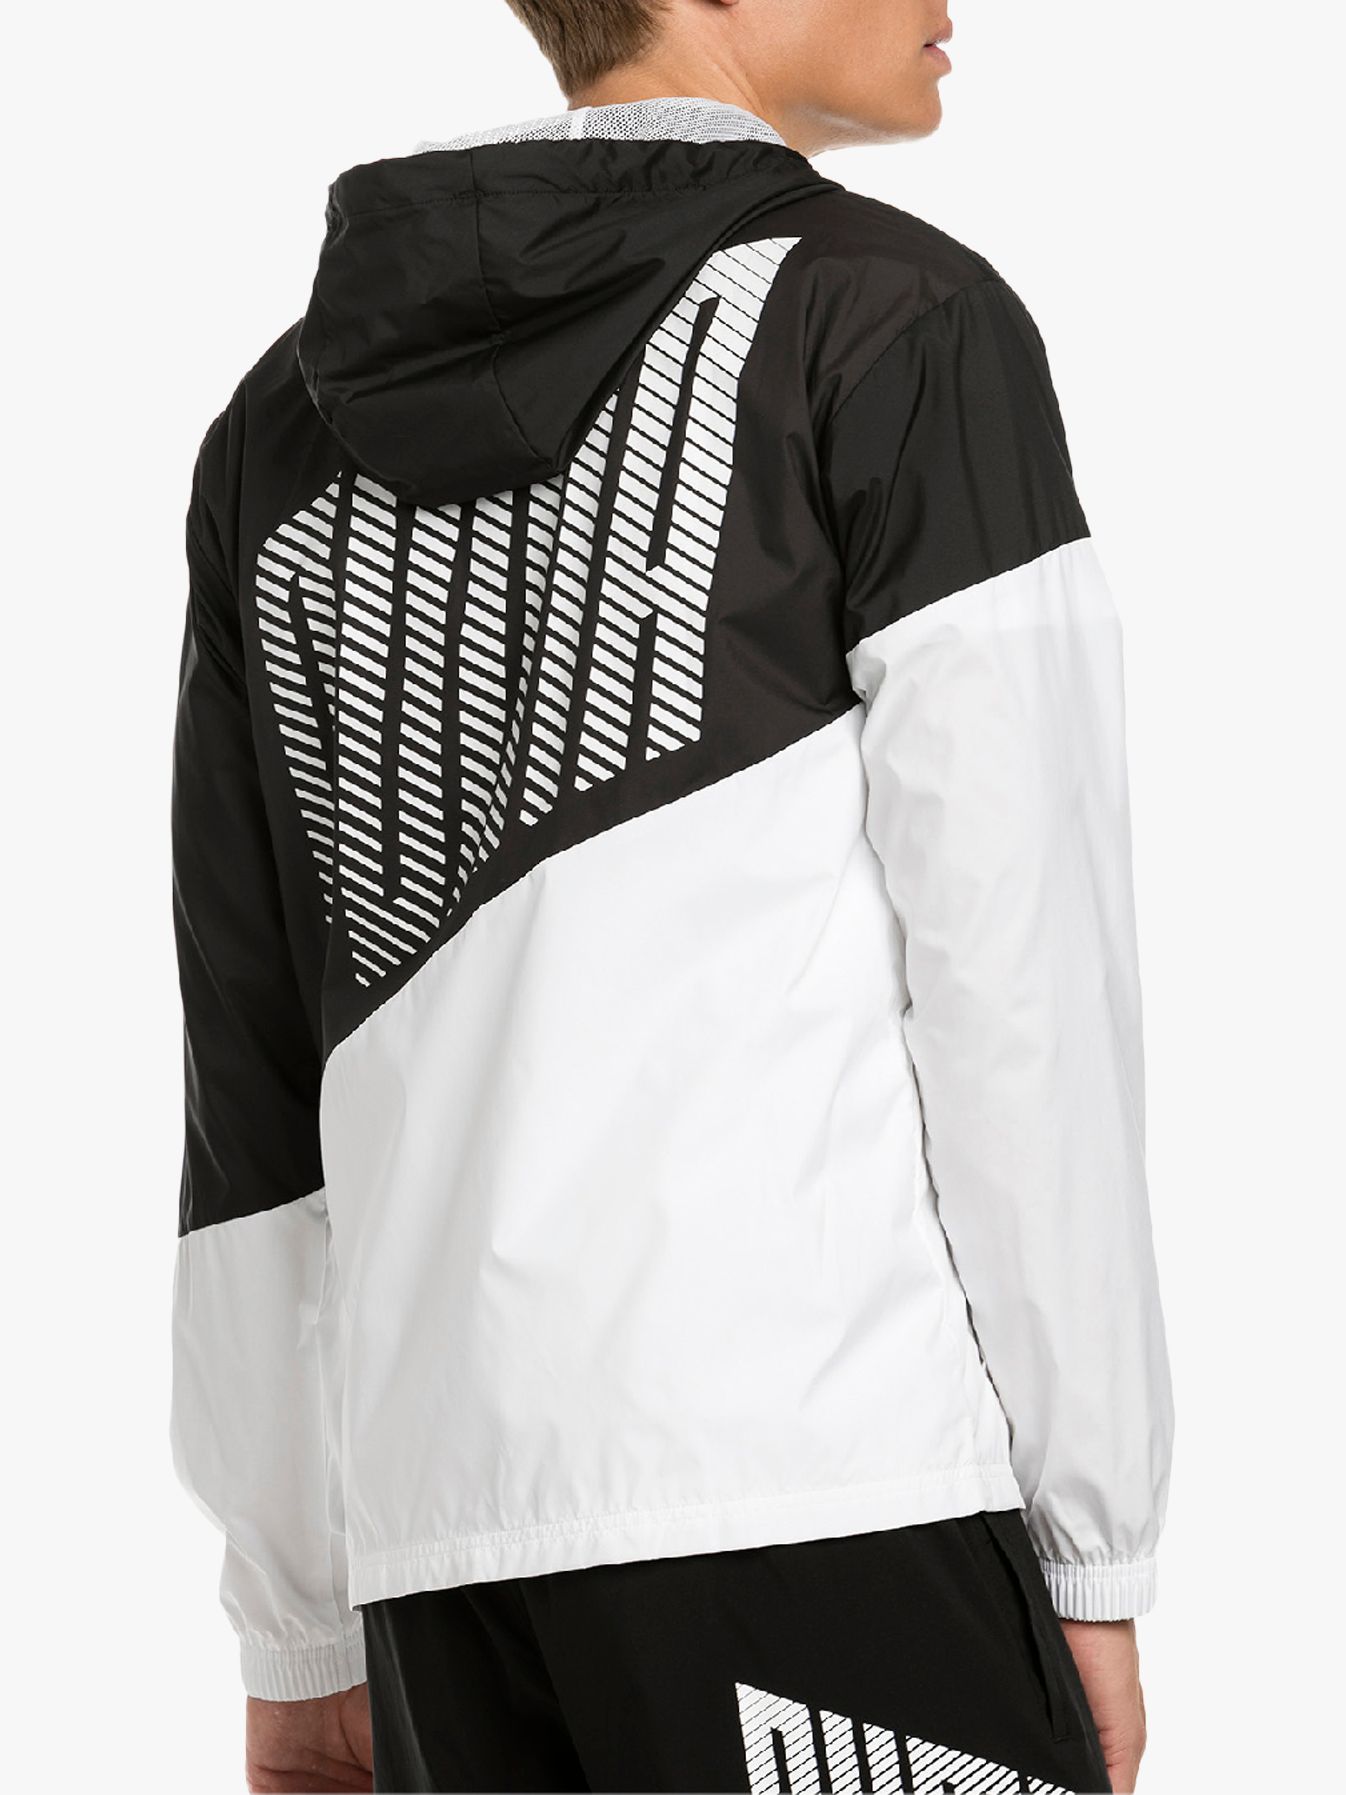 puma jacket black and white